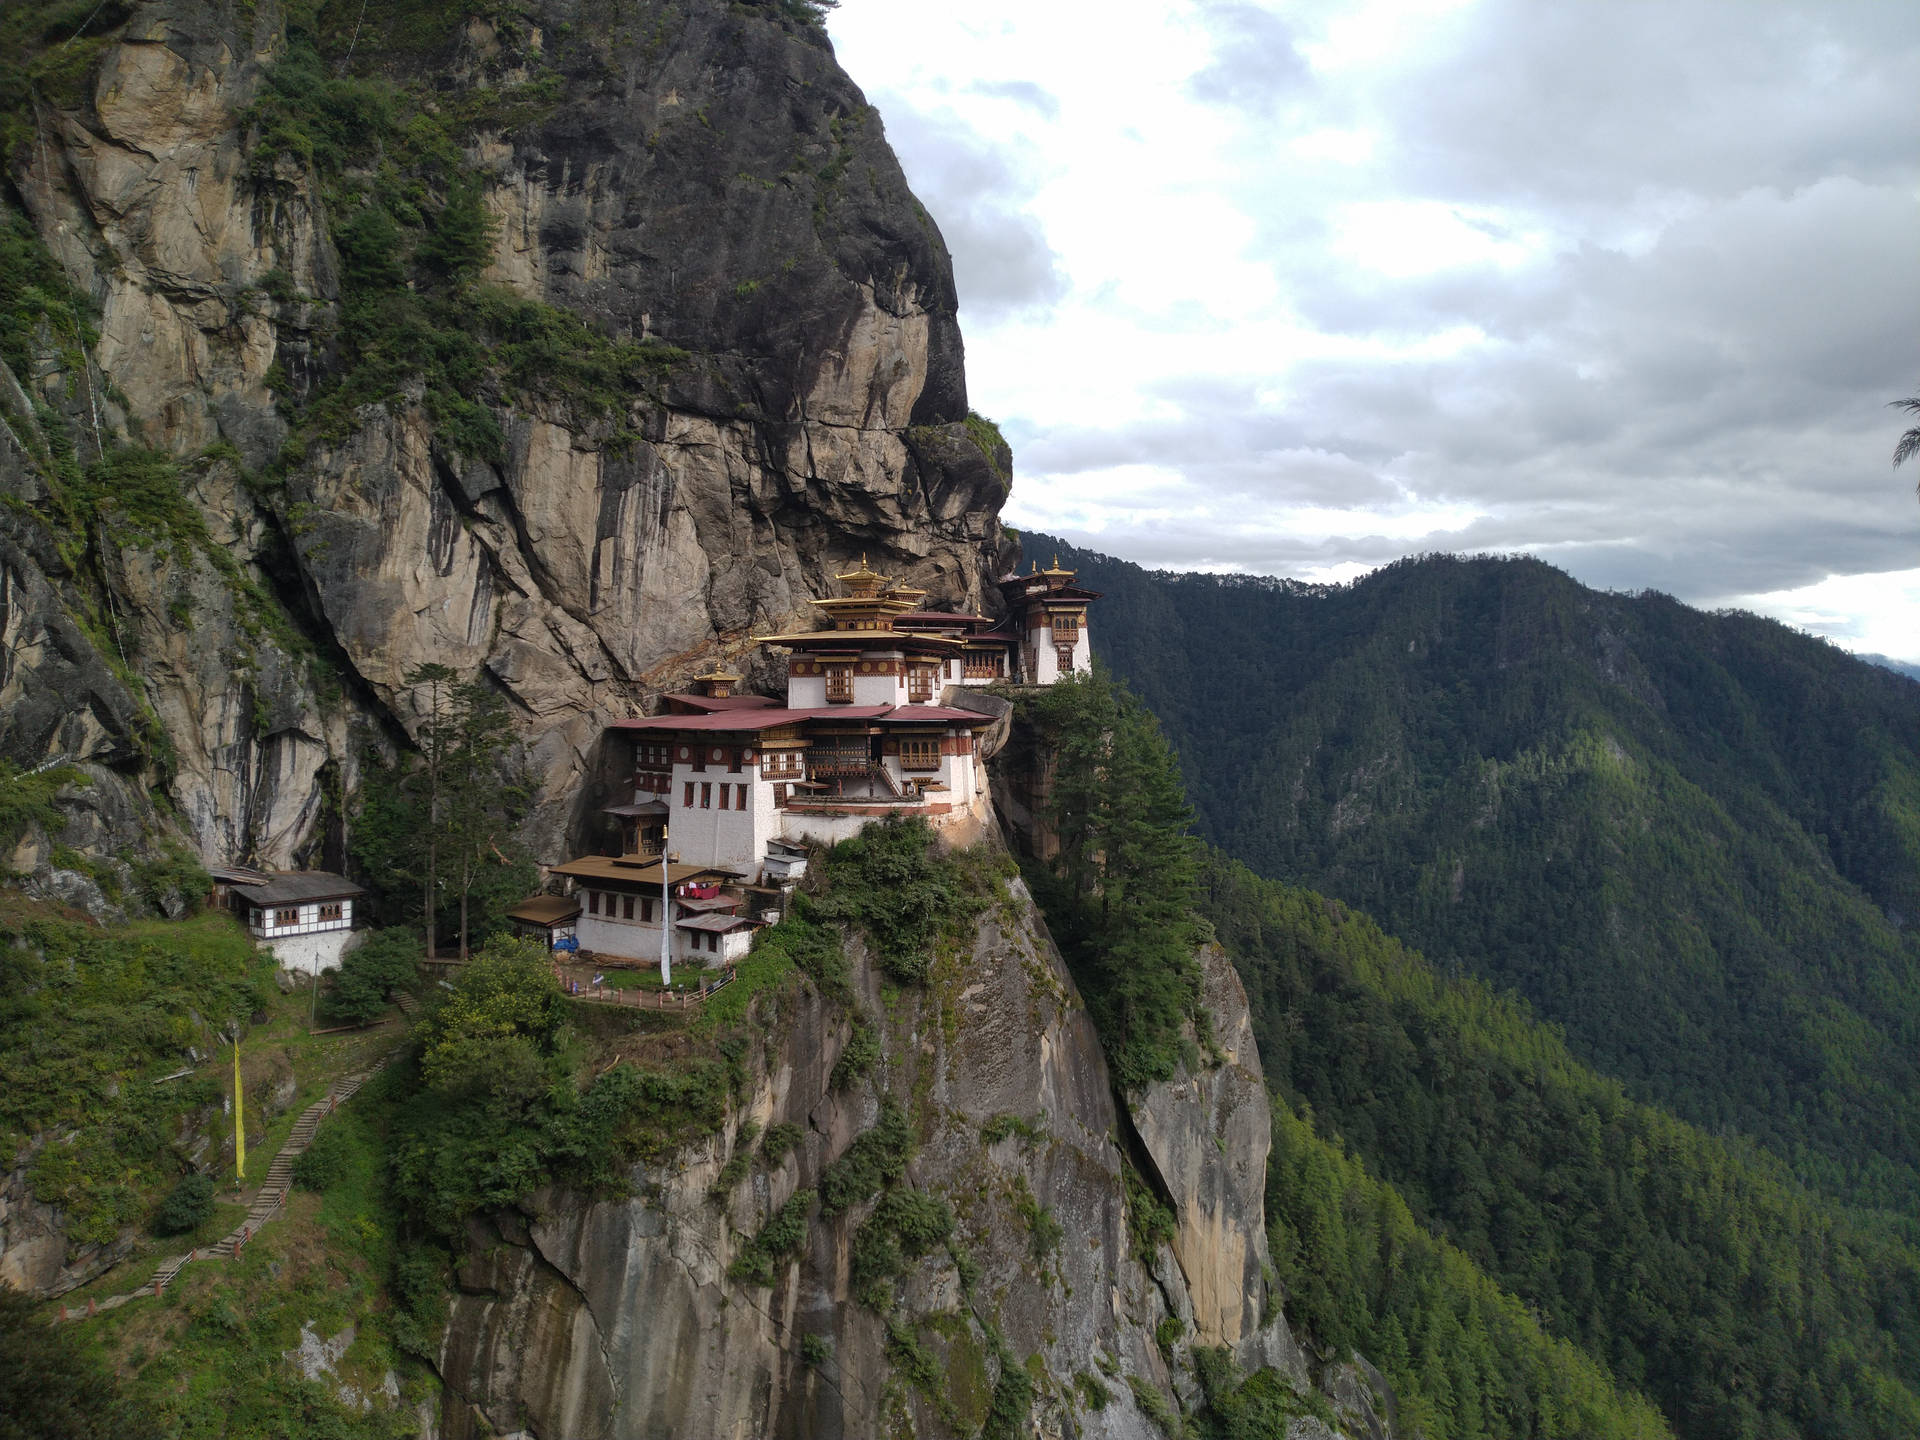 Nãotenho Certeza Do Que Está Pedindo. Bhutan Paro Taktsang São Palavras Em Inglês Que Identificam Um Local Turístico Em Butão. Não Há Uma Tradução Específica Para 